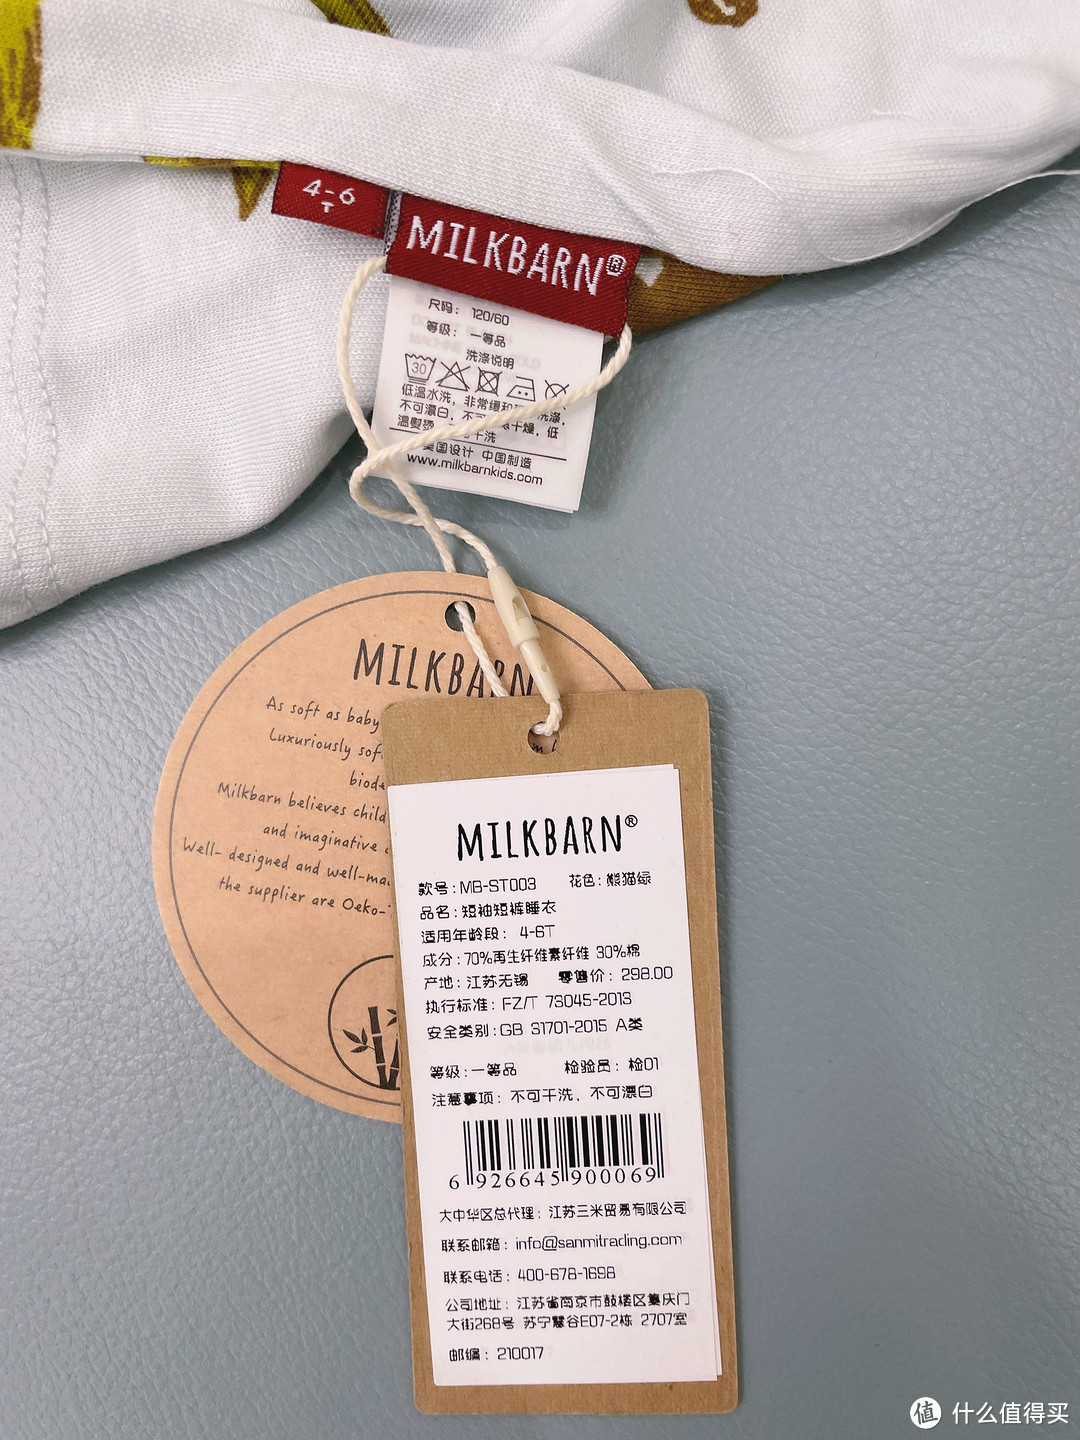 兼具舒适透气与可爱萌趣——Milkbarn2021新款夏季儿童短袖短裤居家睡衣套装